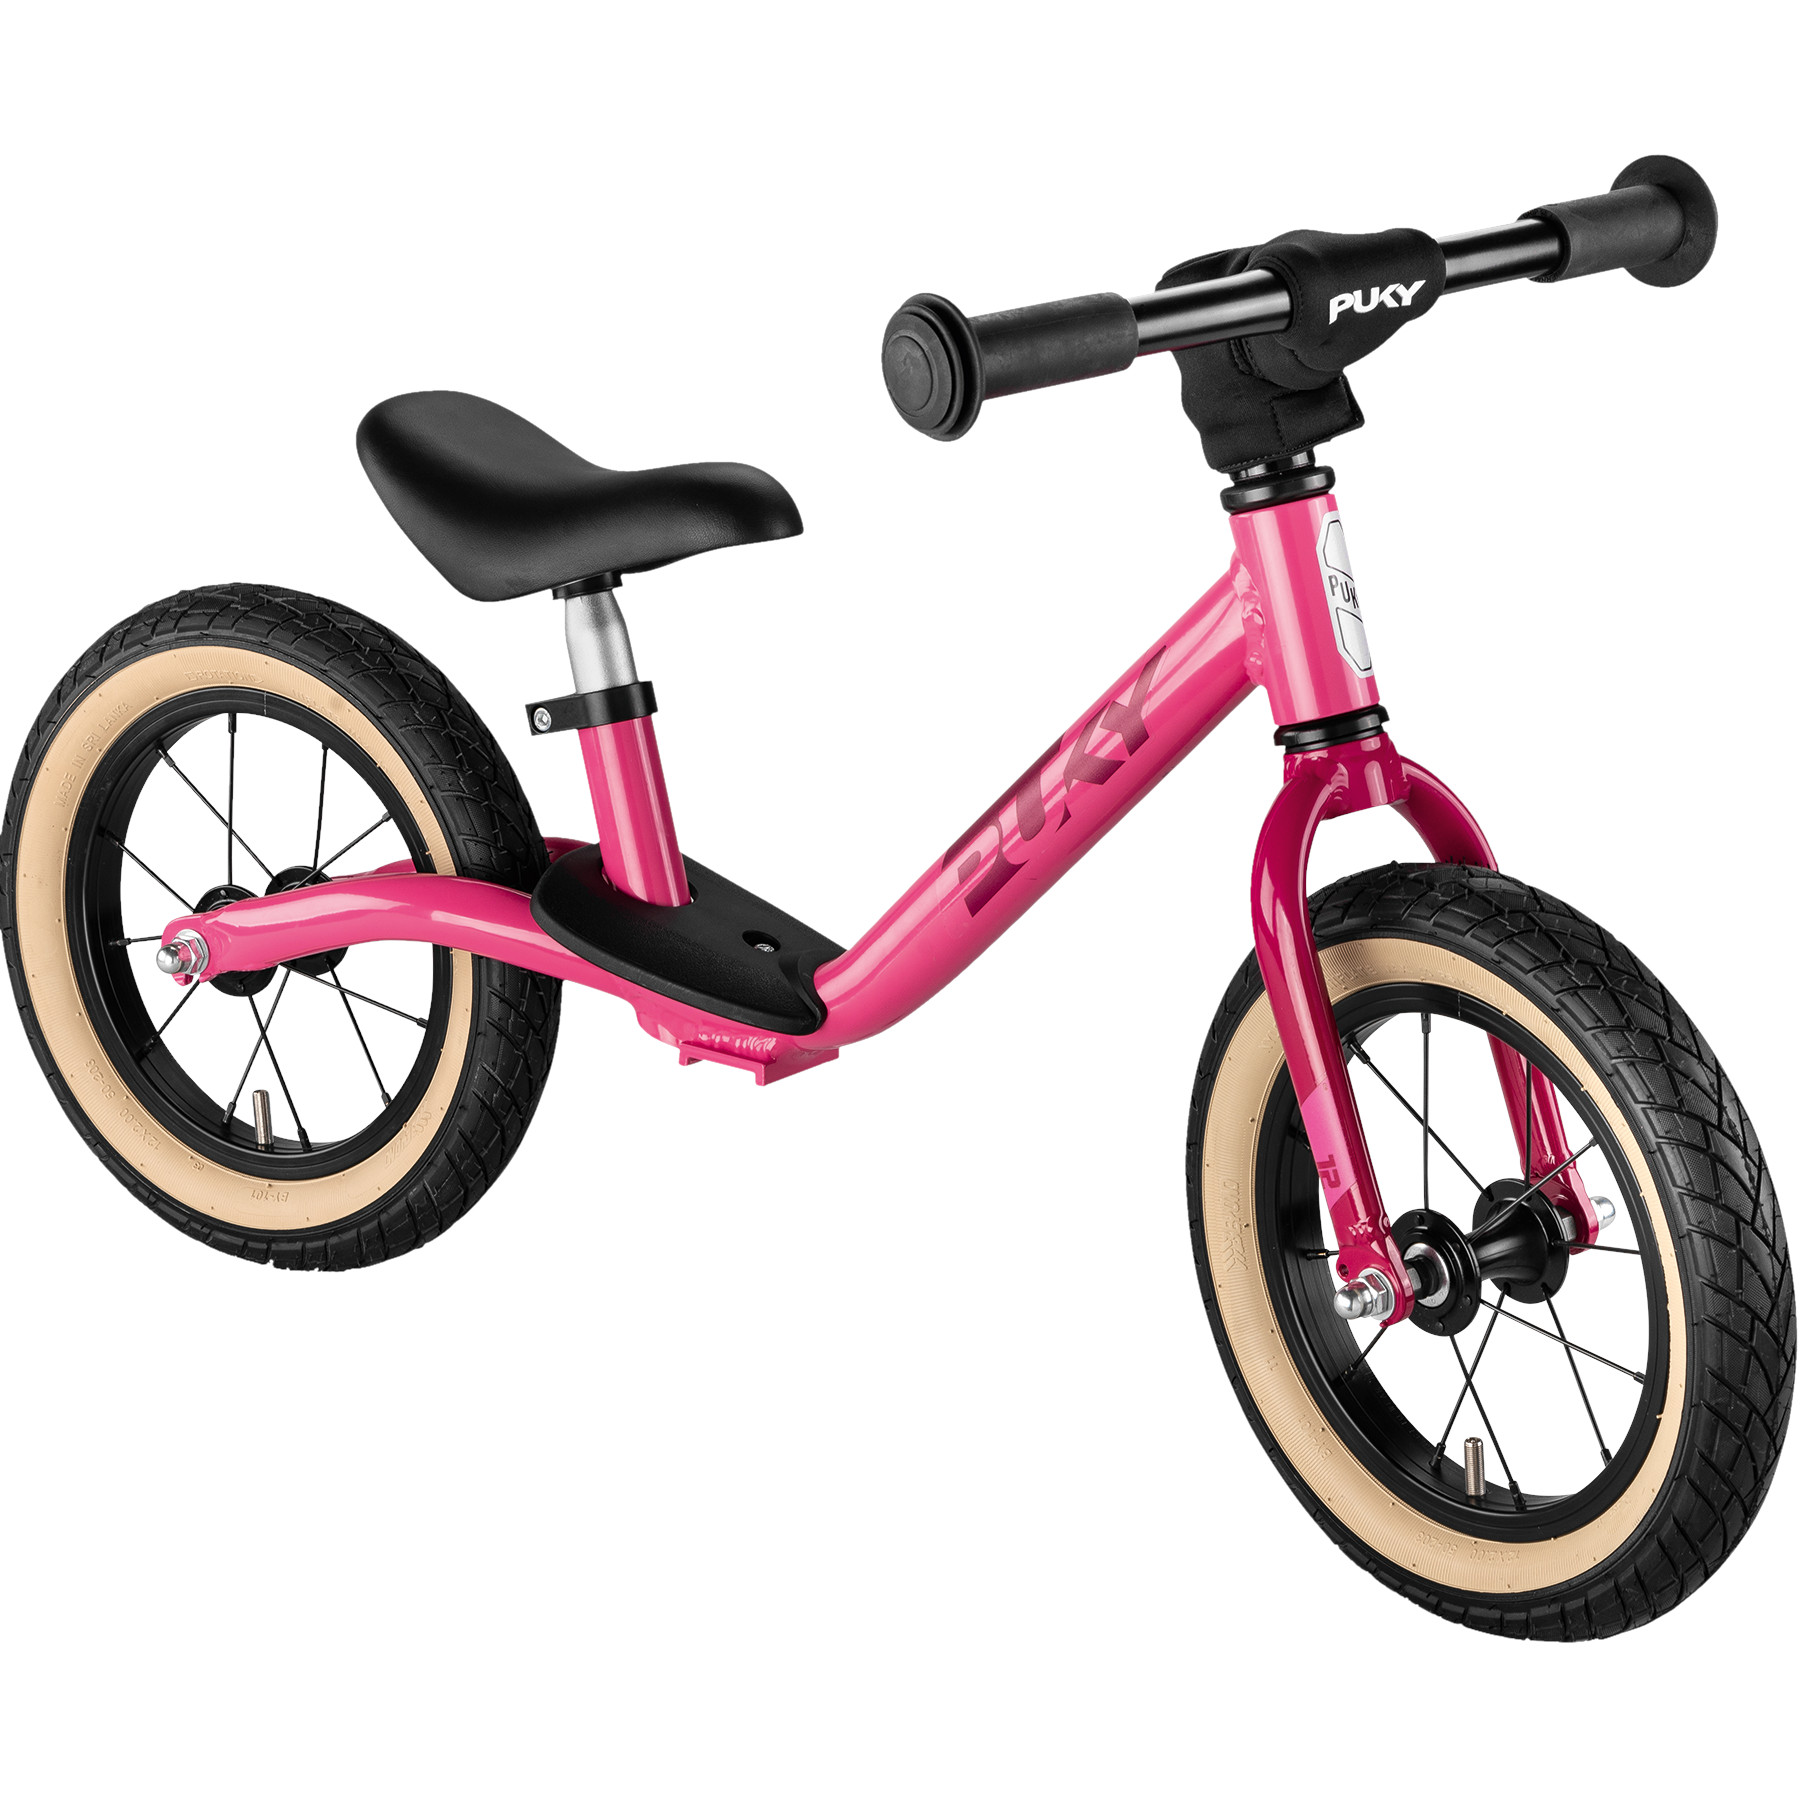 Foto de Puky LR Light Bicicleta sin Pedales para Niños - pink